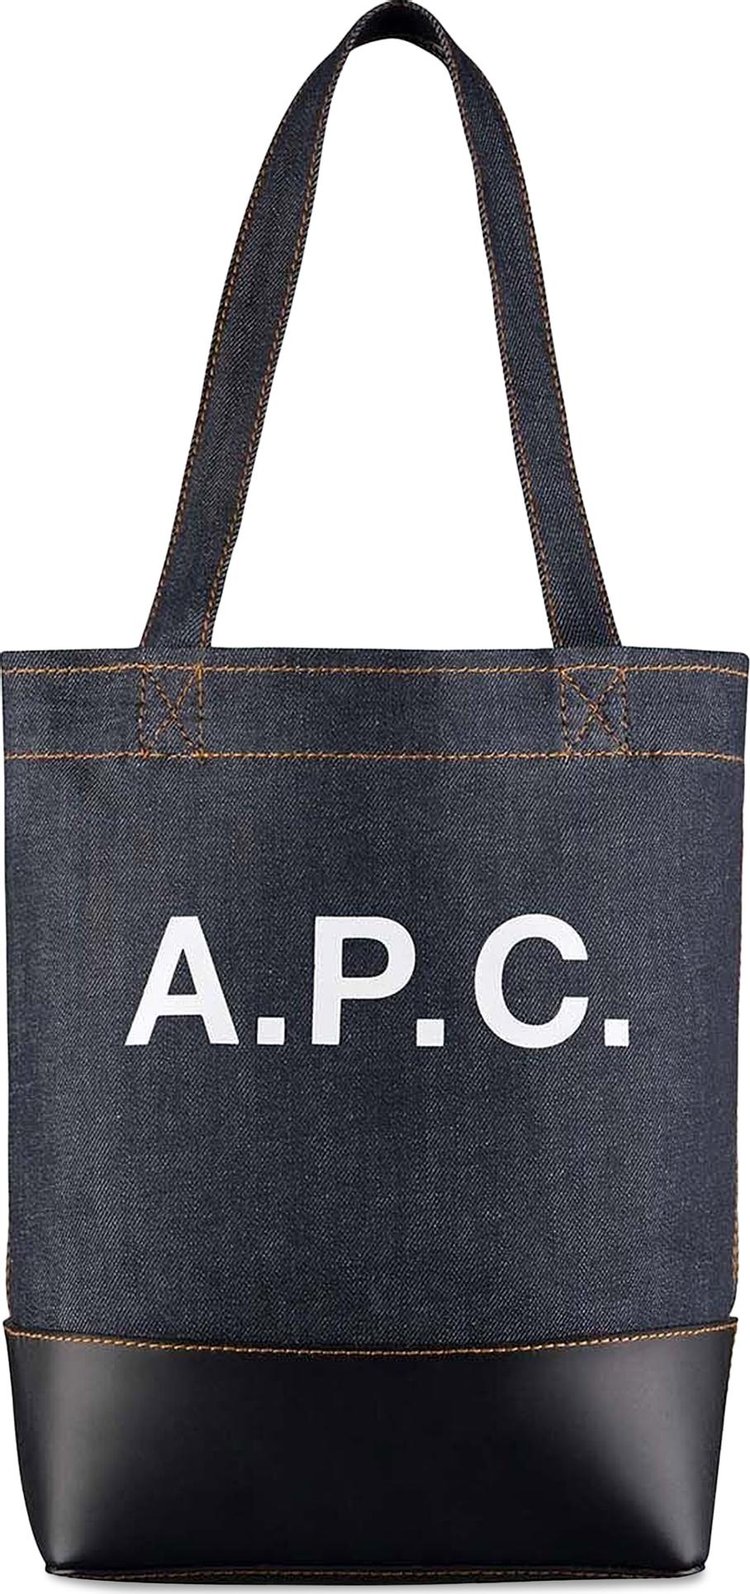 A.P.C. Small Axel Tote Bag 'Dark Navy'